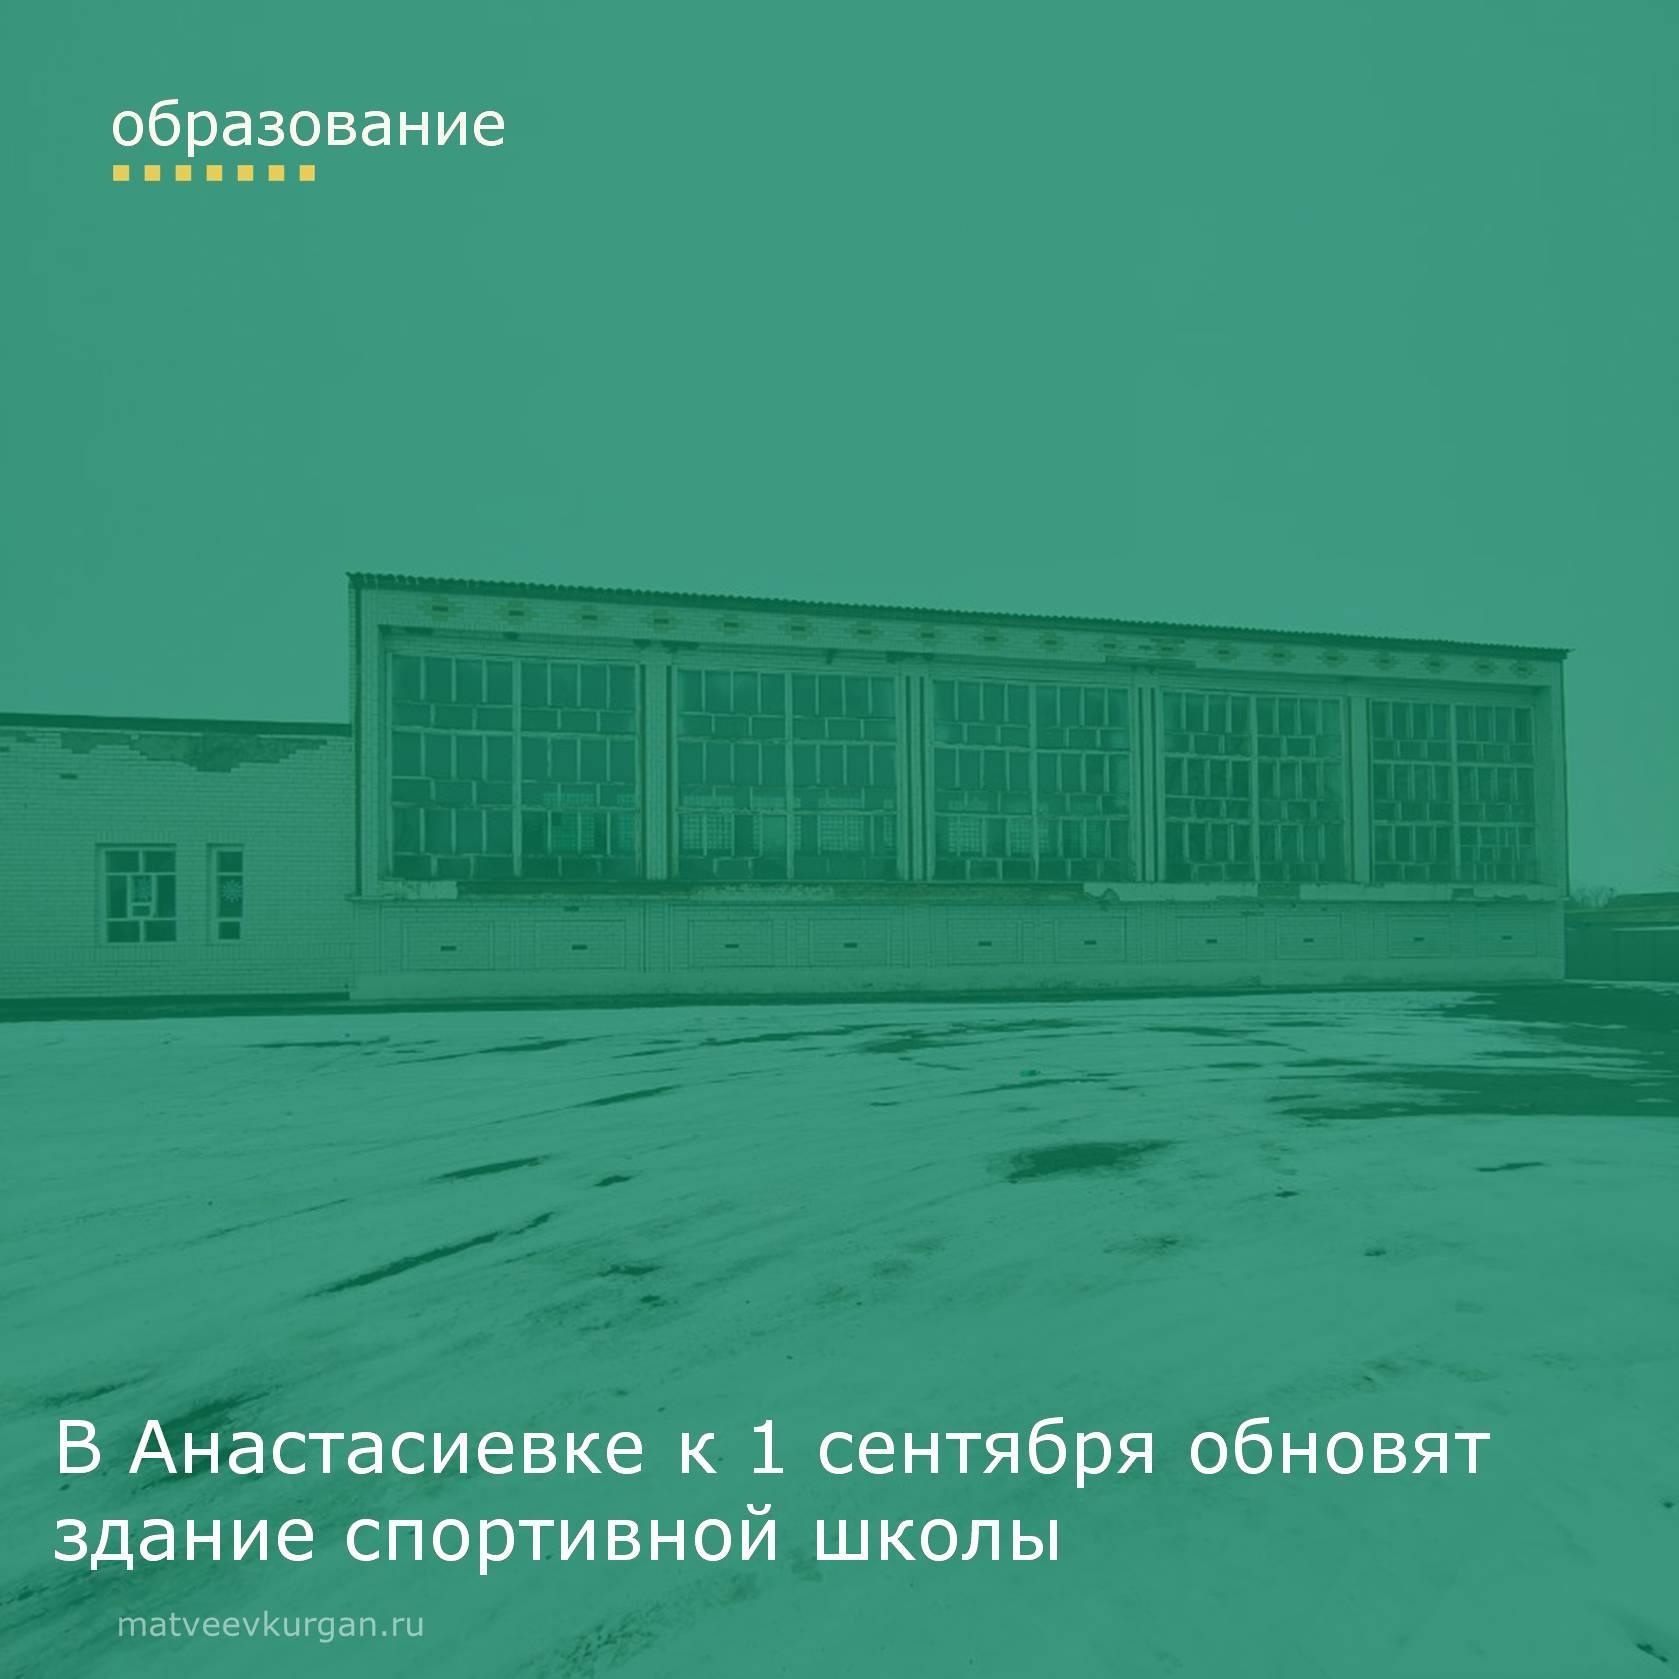 В селе Анастасиевка к 1 сентября обновят здание спортивной школы